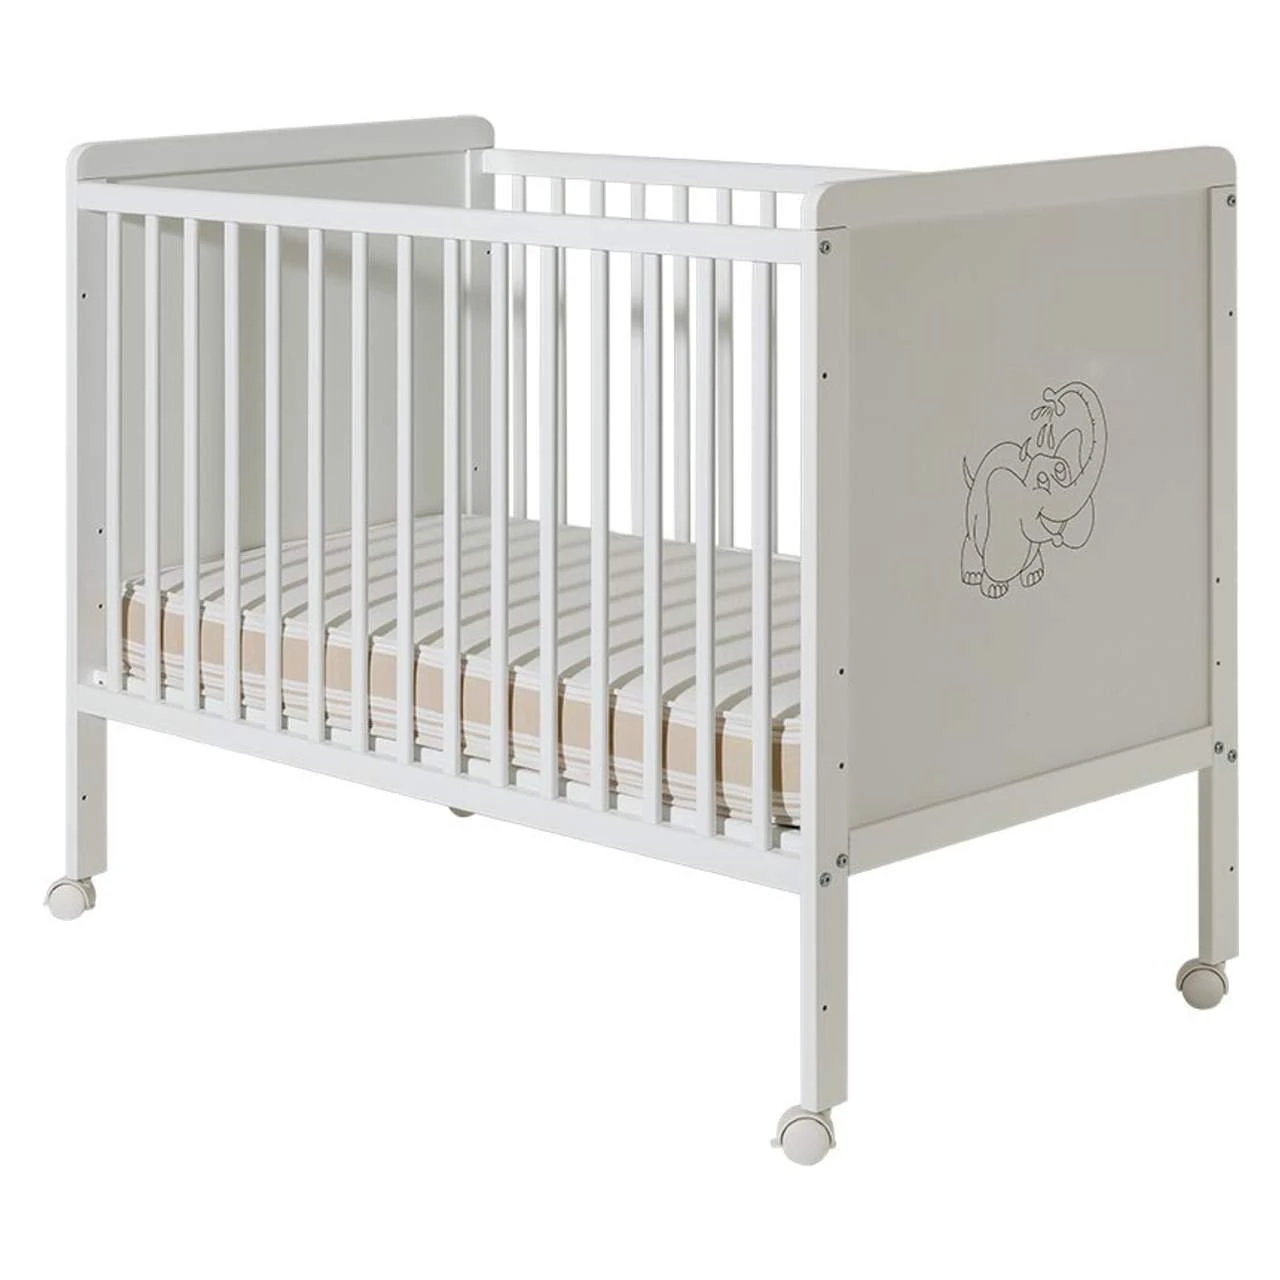 Dečiji krevetac Happy beli - drveni krevetac za bebe sa točkićima